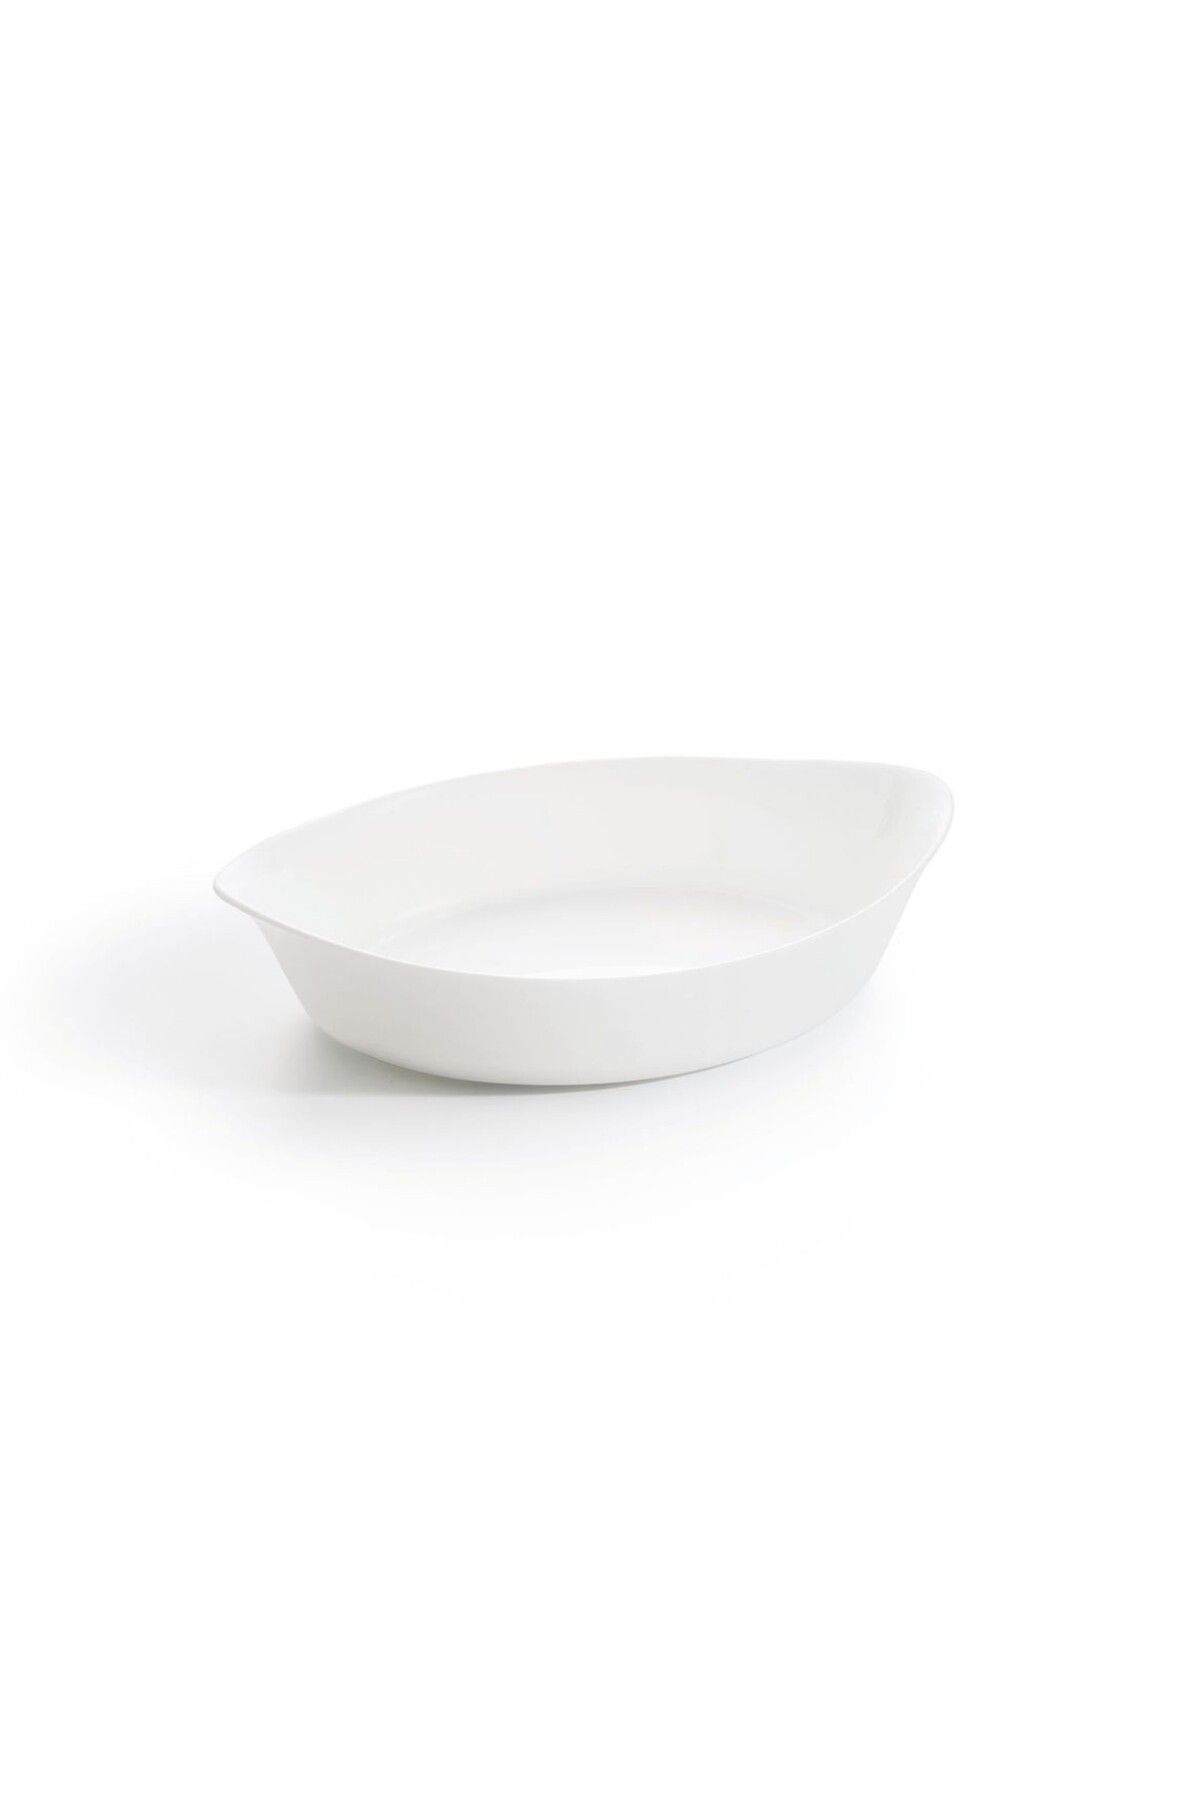 Luminarc Temperli Cam Beyaz Fırın Kabı 29x17 Cm Akıllı Mutfak Carine Oval Pişirme Ürün 670g Dayanıklı 1 Adet